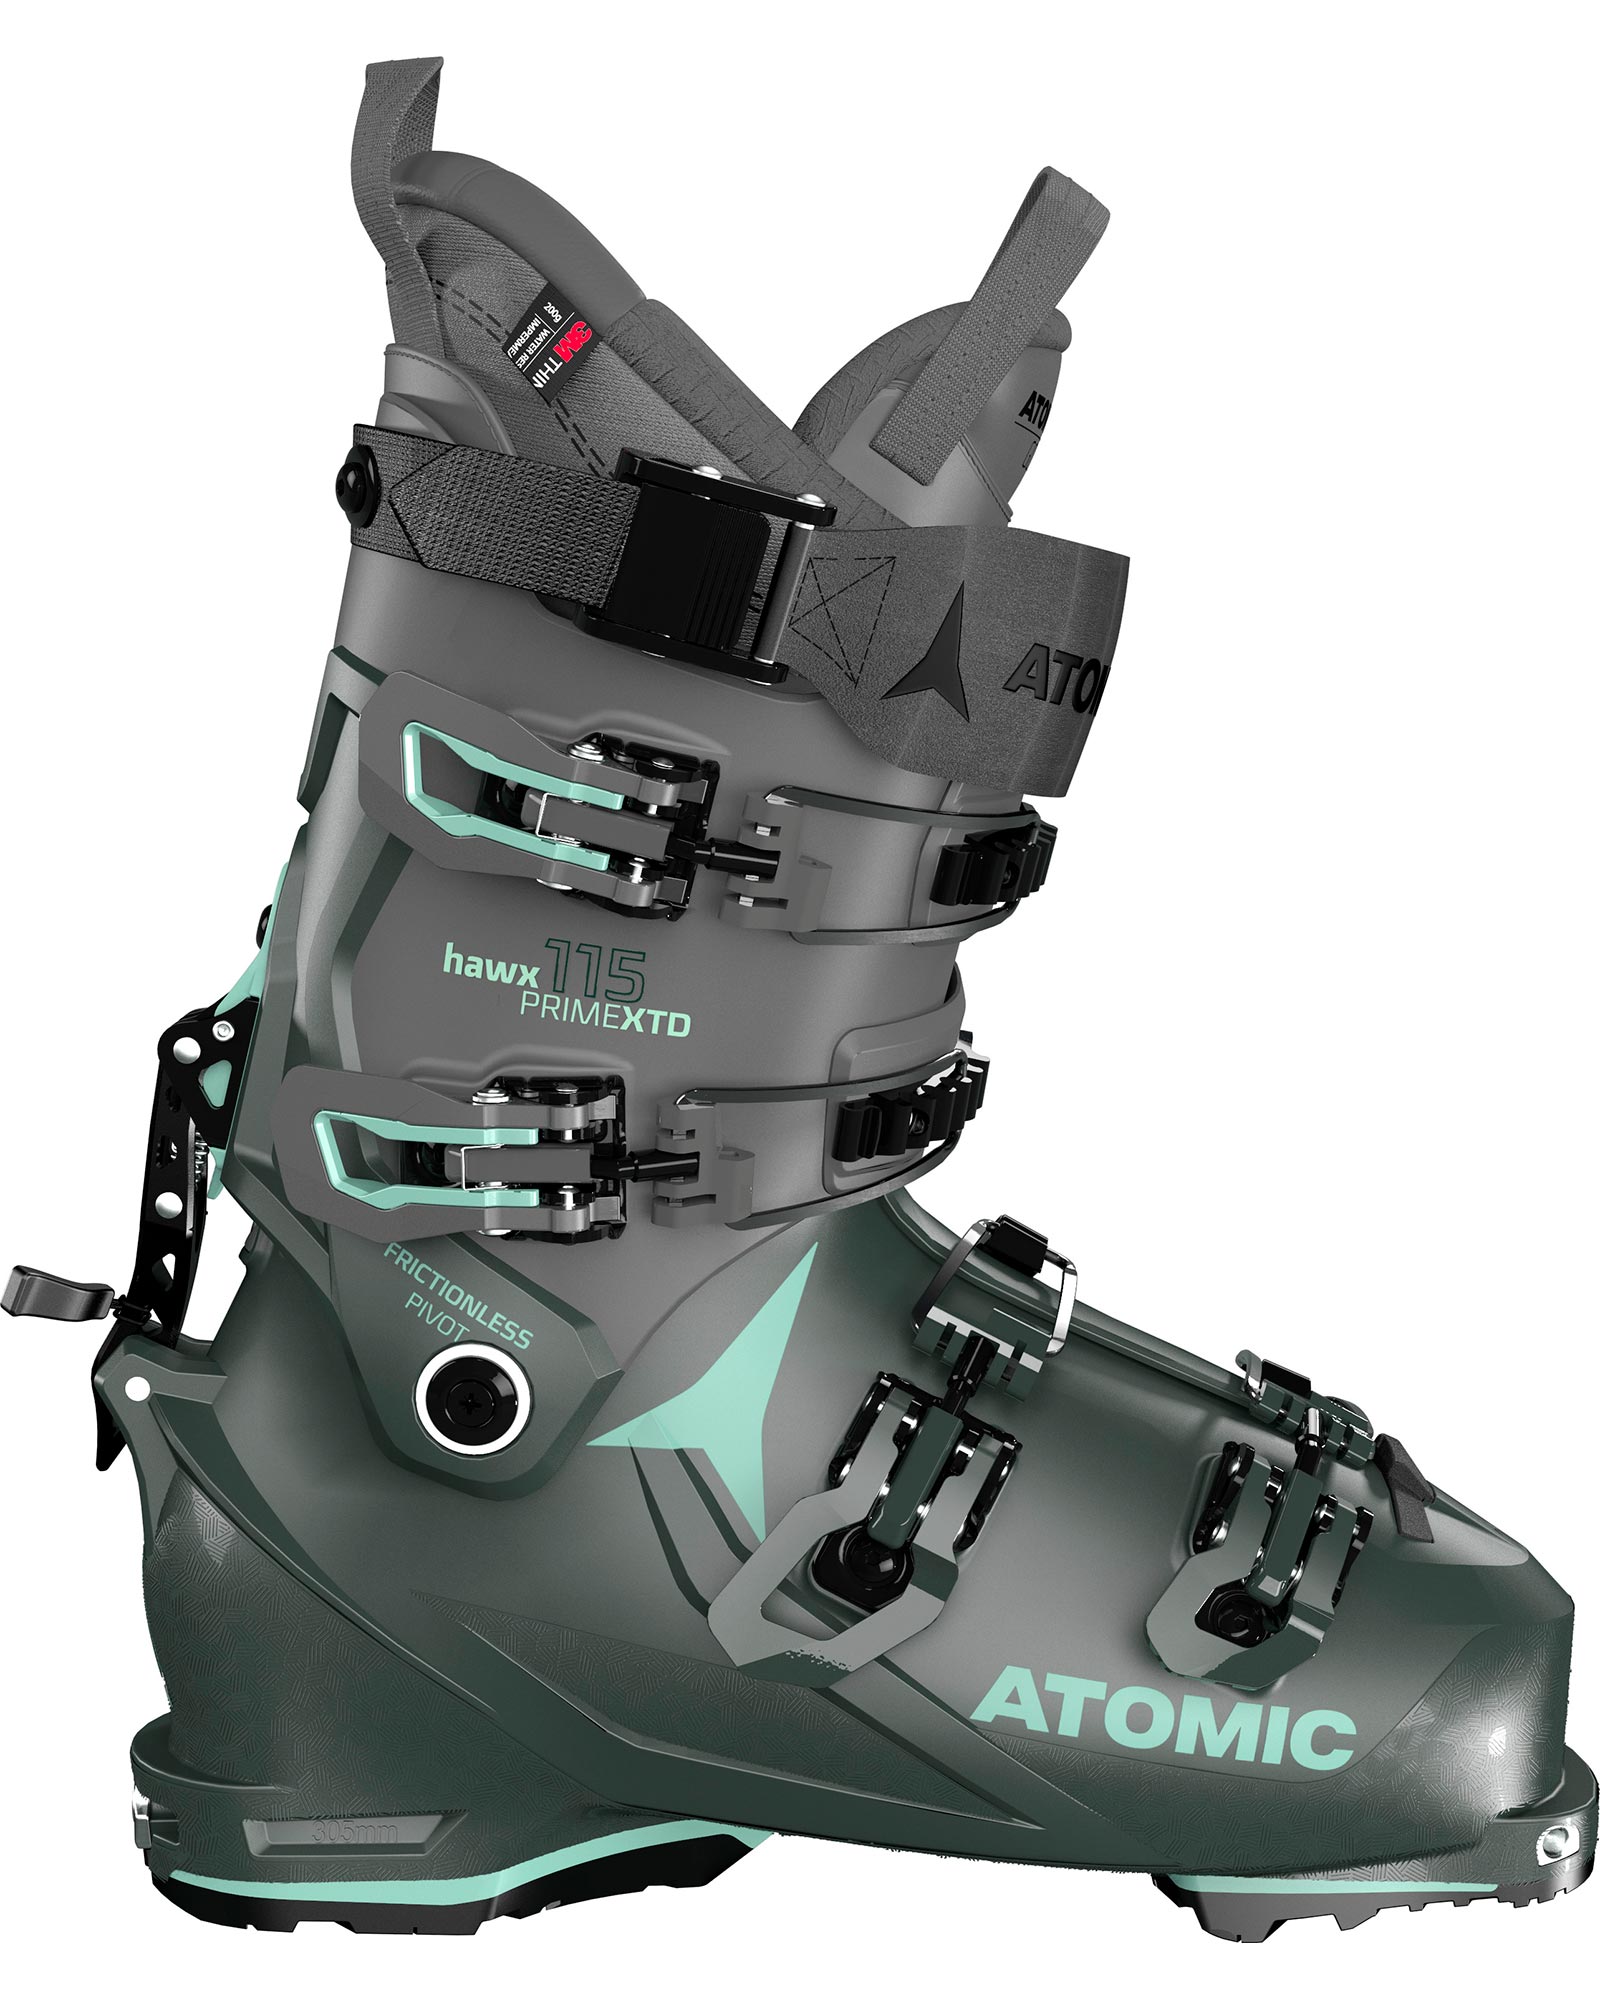 Atomic Hawx Prime Xtd 115 Ct Gw Womens Ski Boots 2022